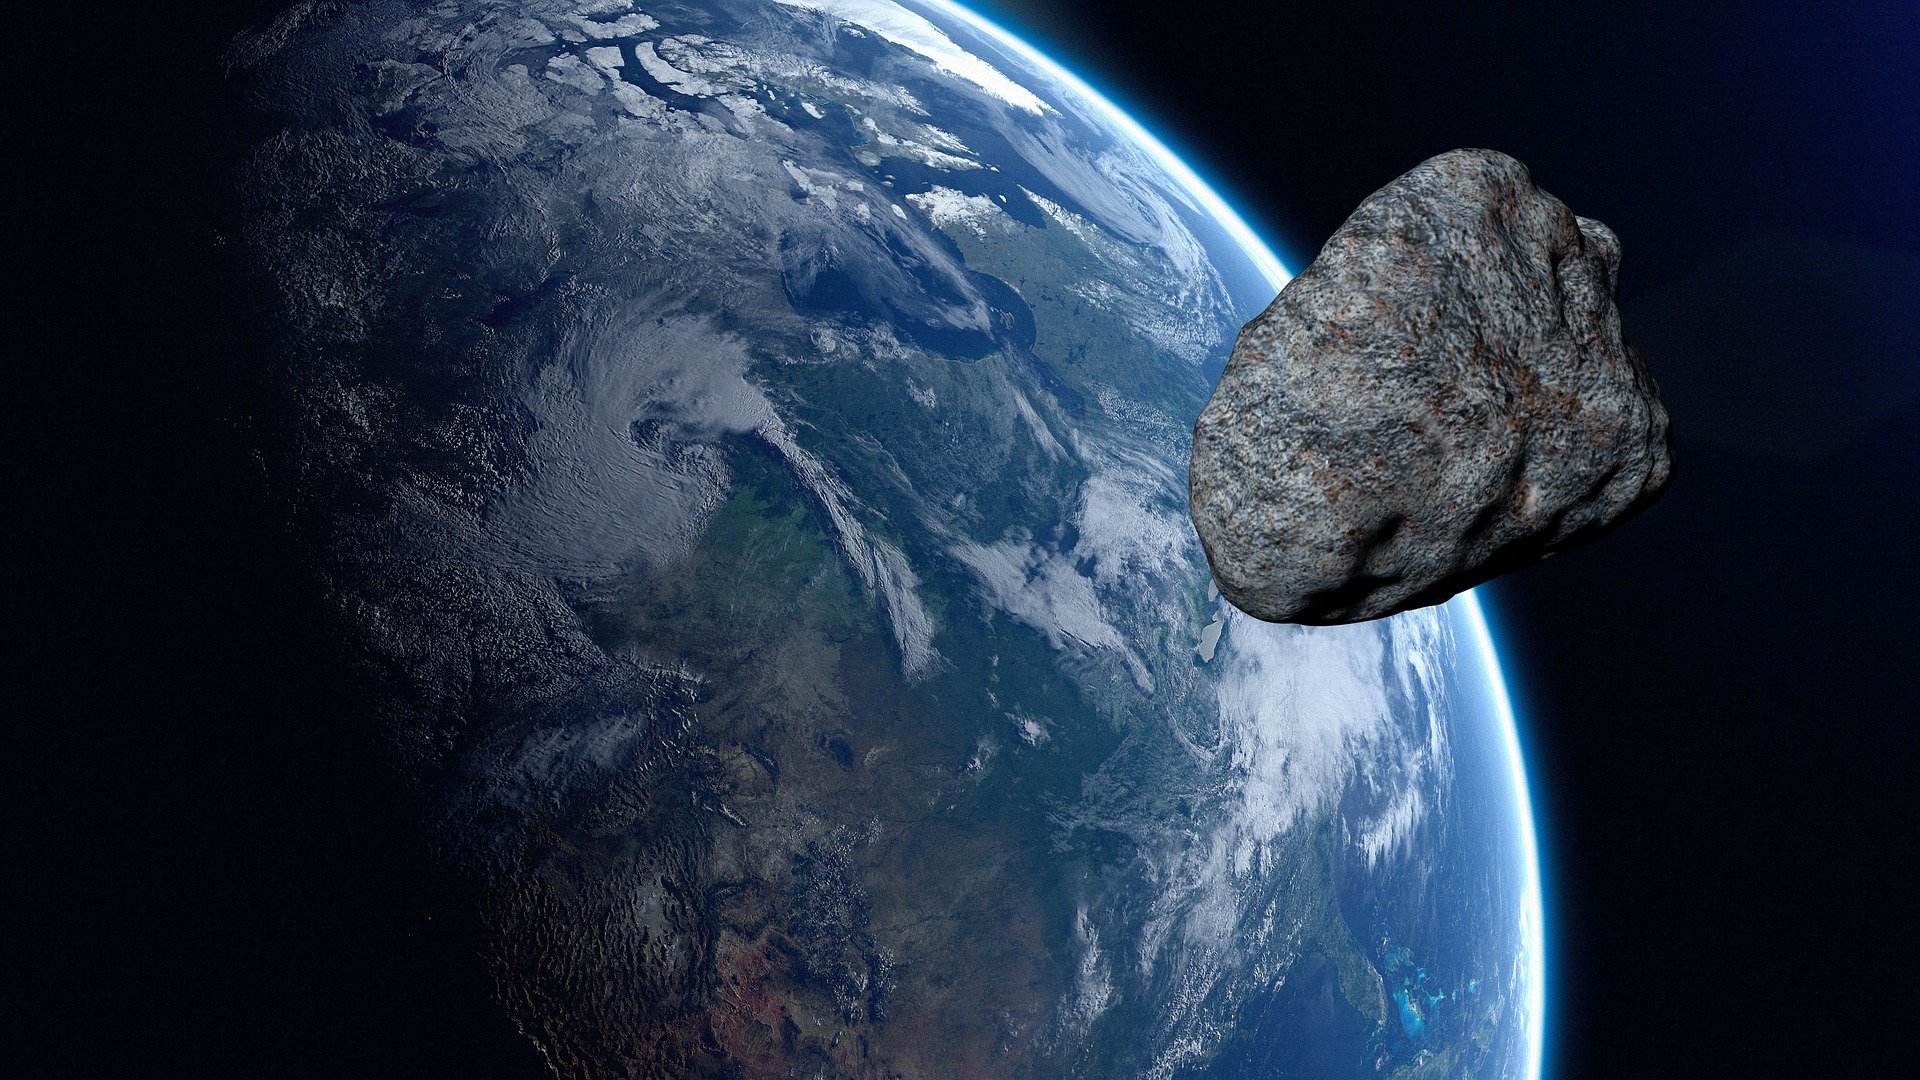 Bolygós rövidhírek: új aszteroidavédelem